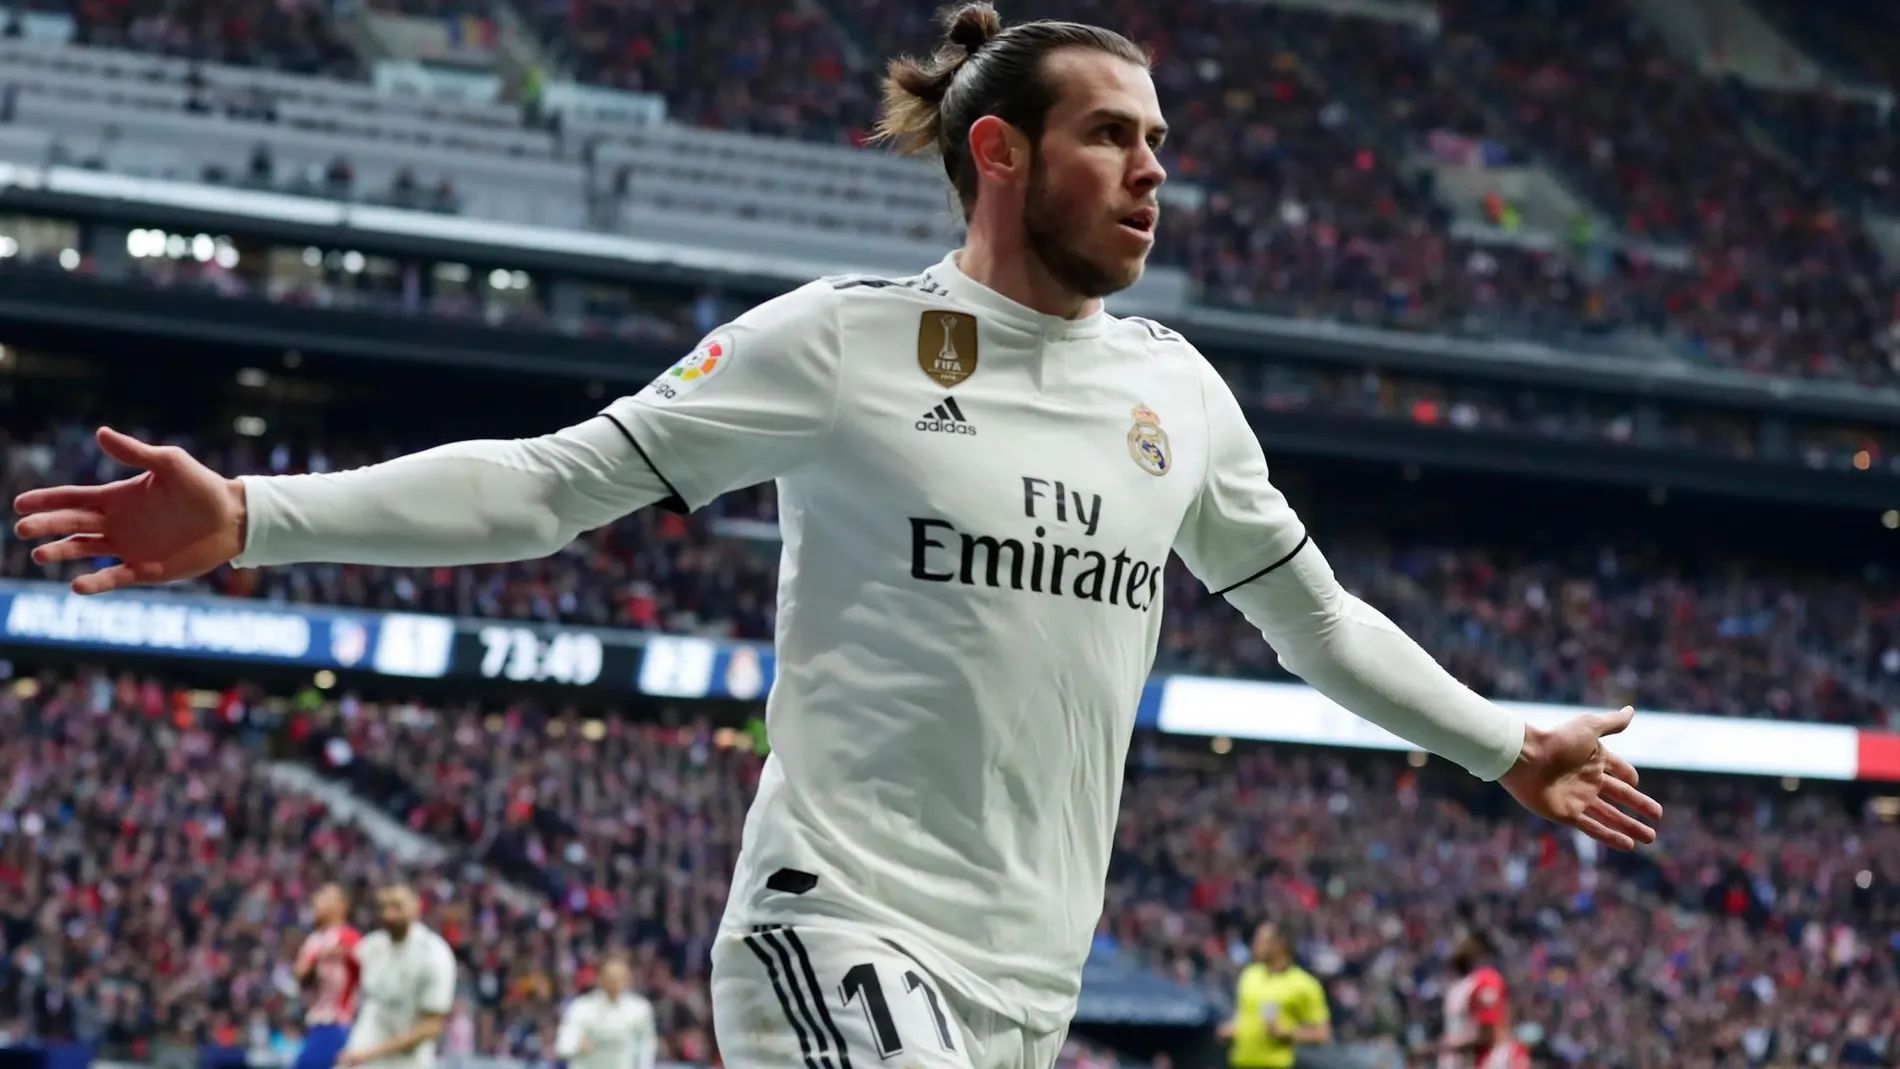 Bale, celebrando el tercer gol del Real Madrid. Pocos segundos más tarde, hizo “el corte de mangas”, por el que puede ser sancionado